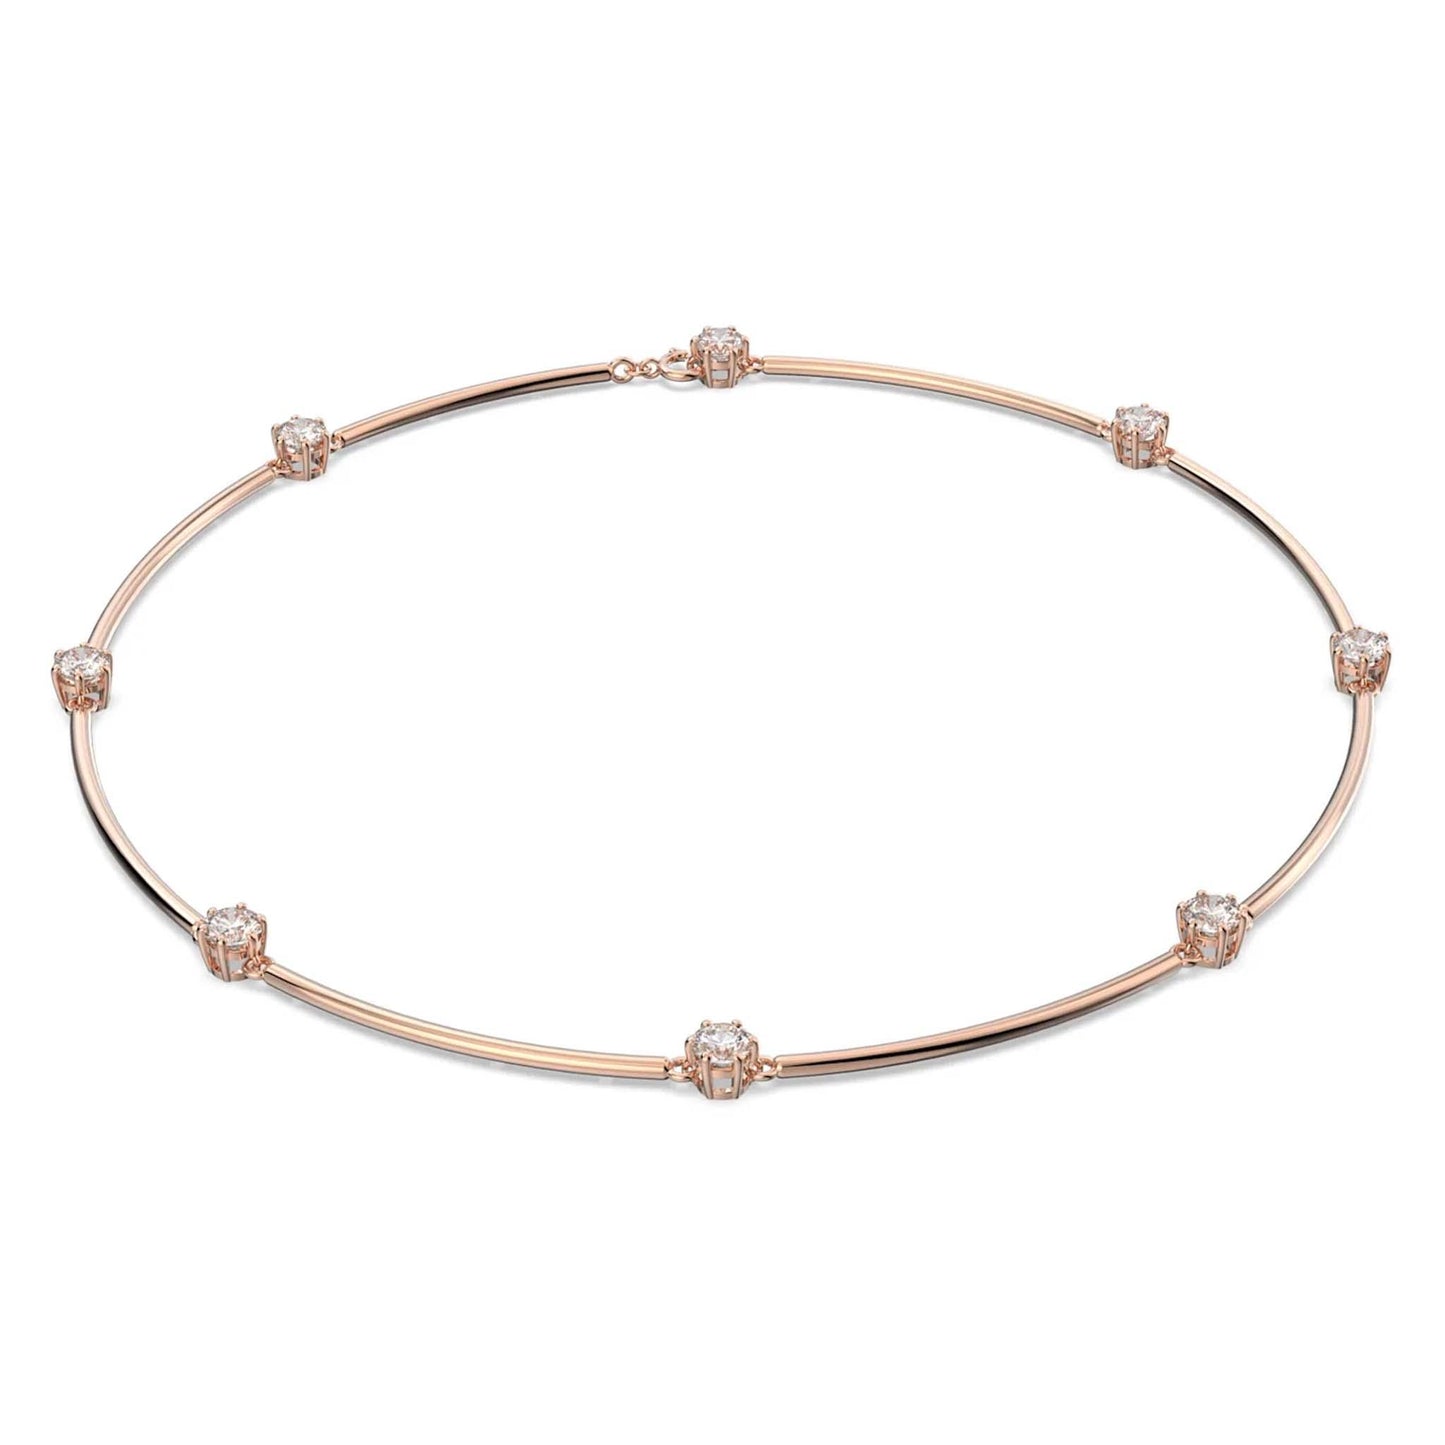 Constella necklace - Cosmos Boutique New Jersey